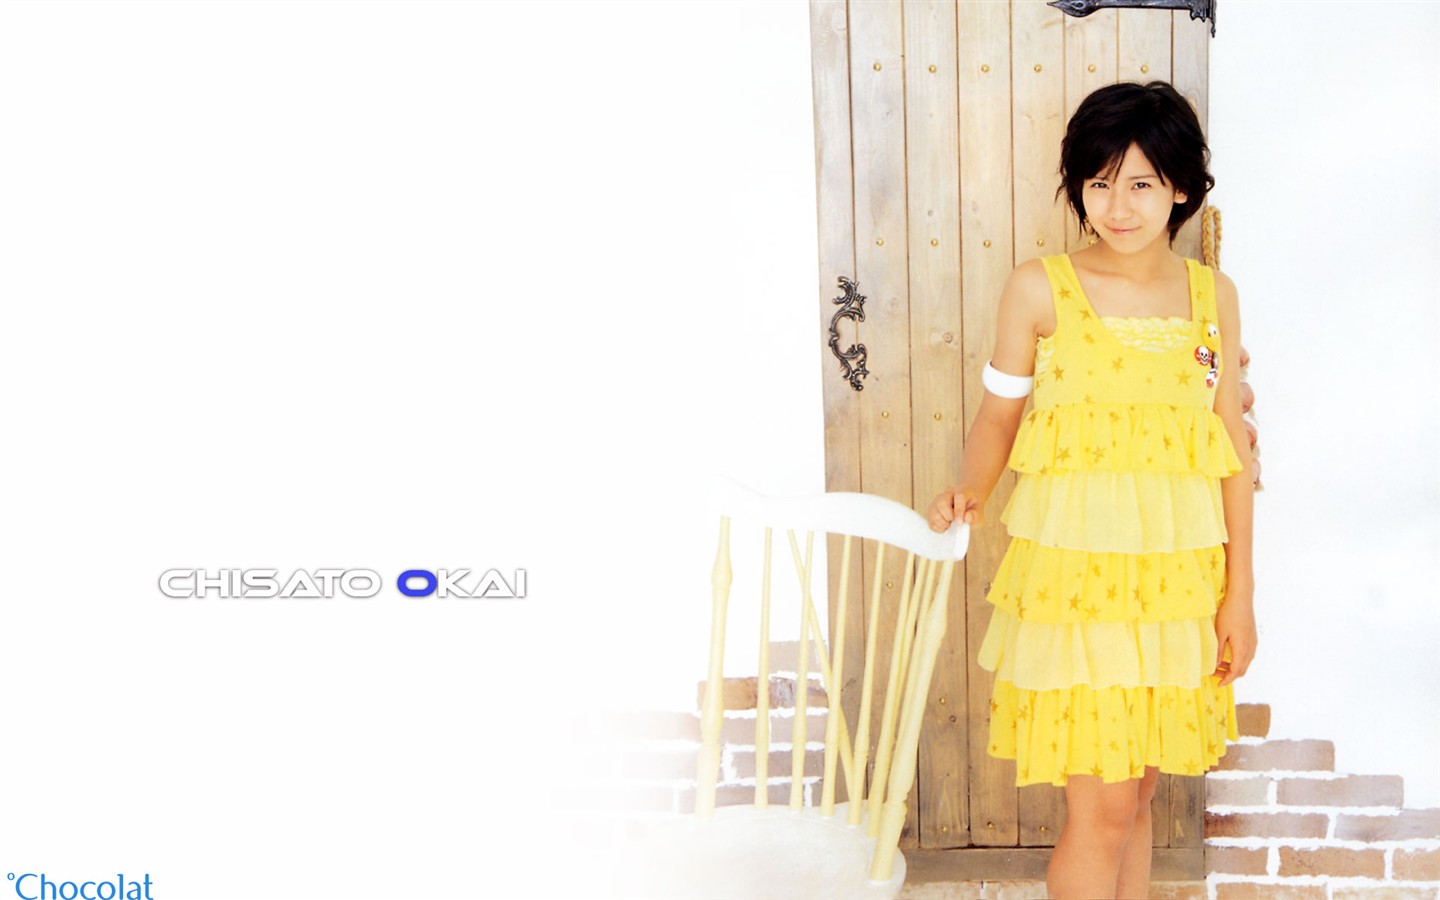 日本美少女组合Cute写真6 - 1440x900